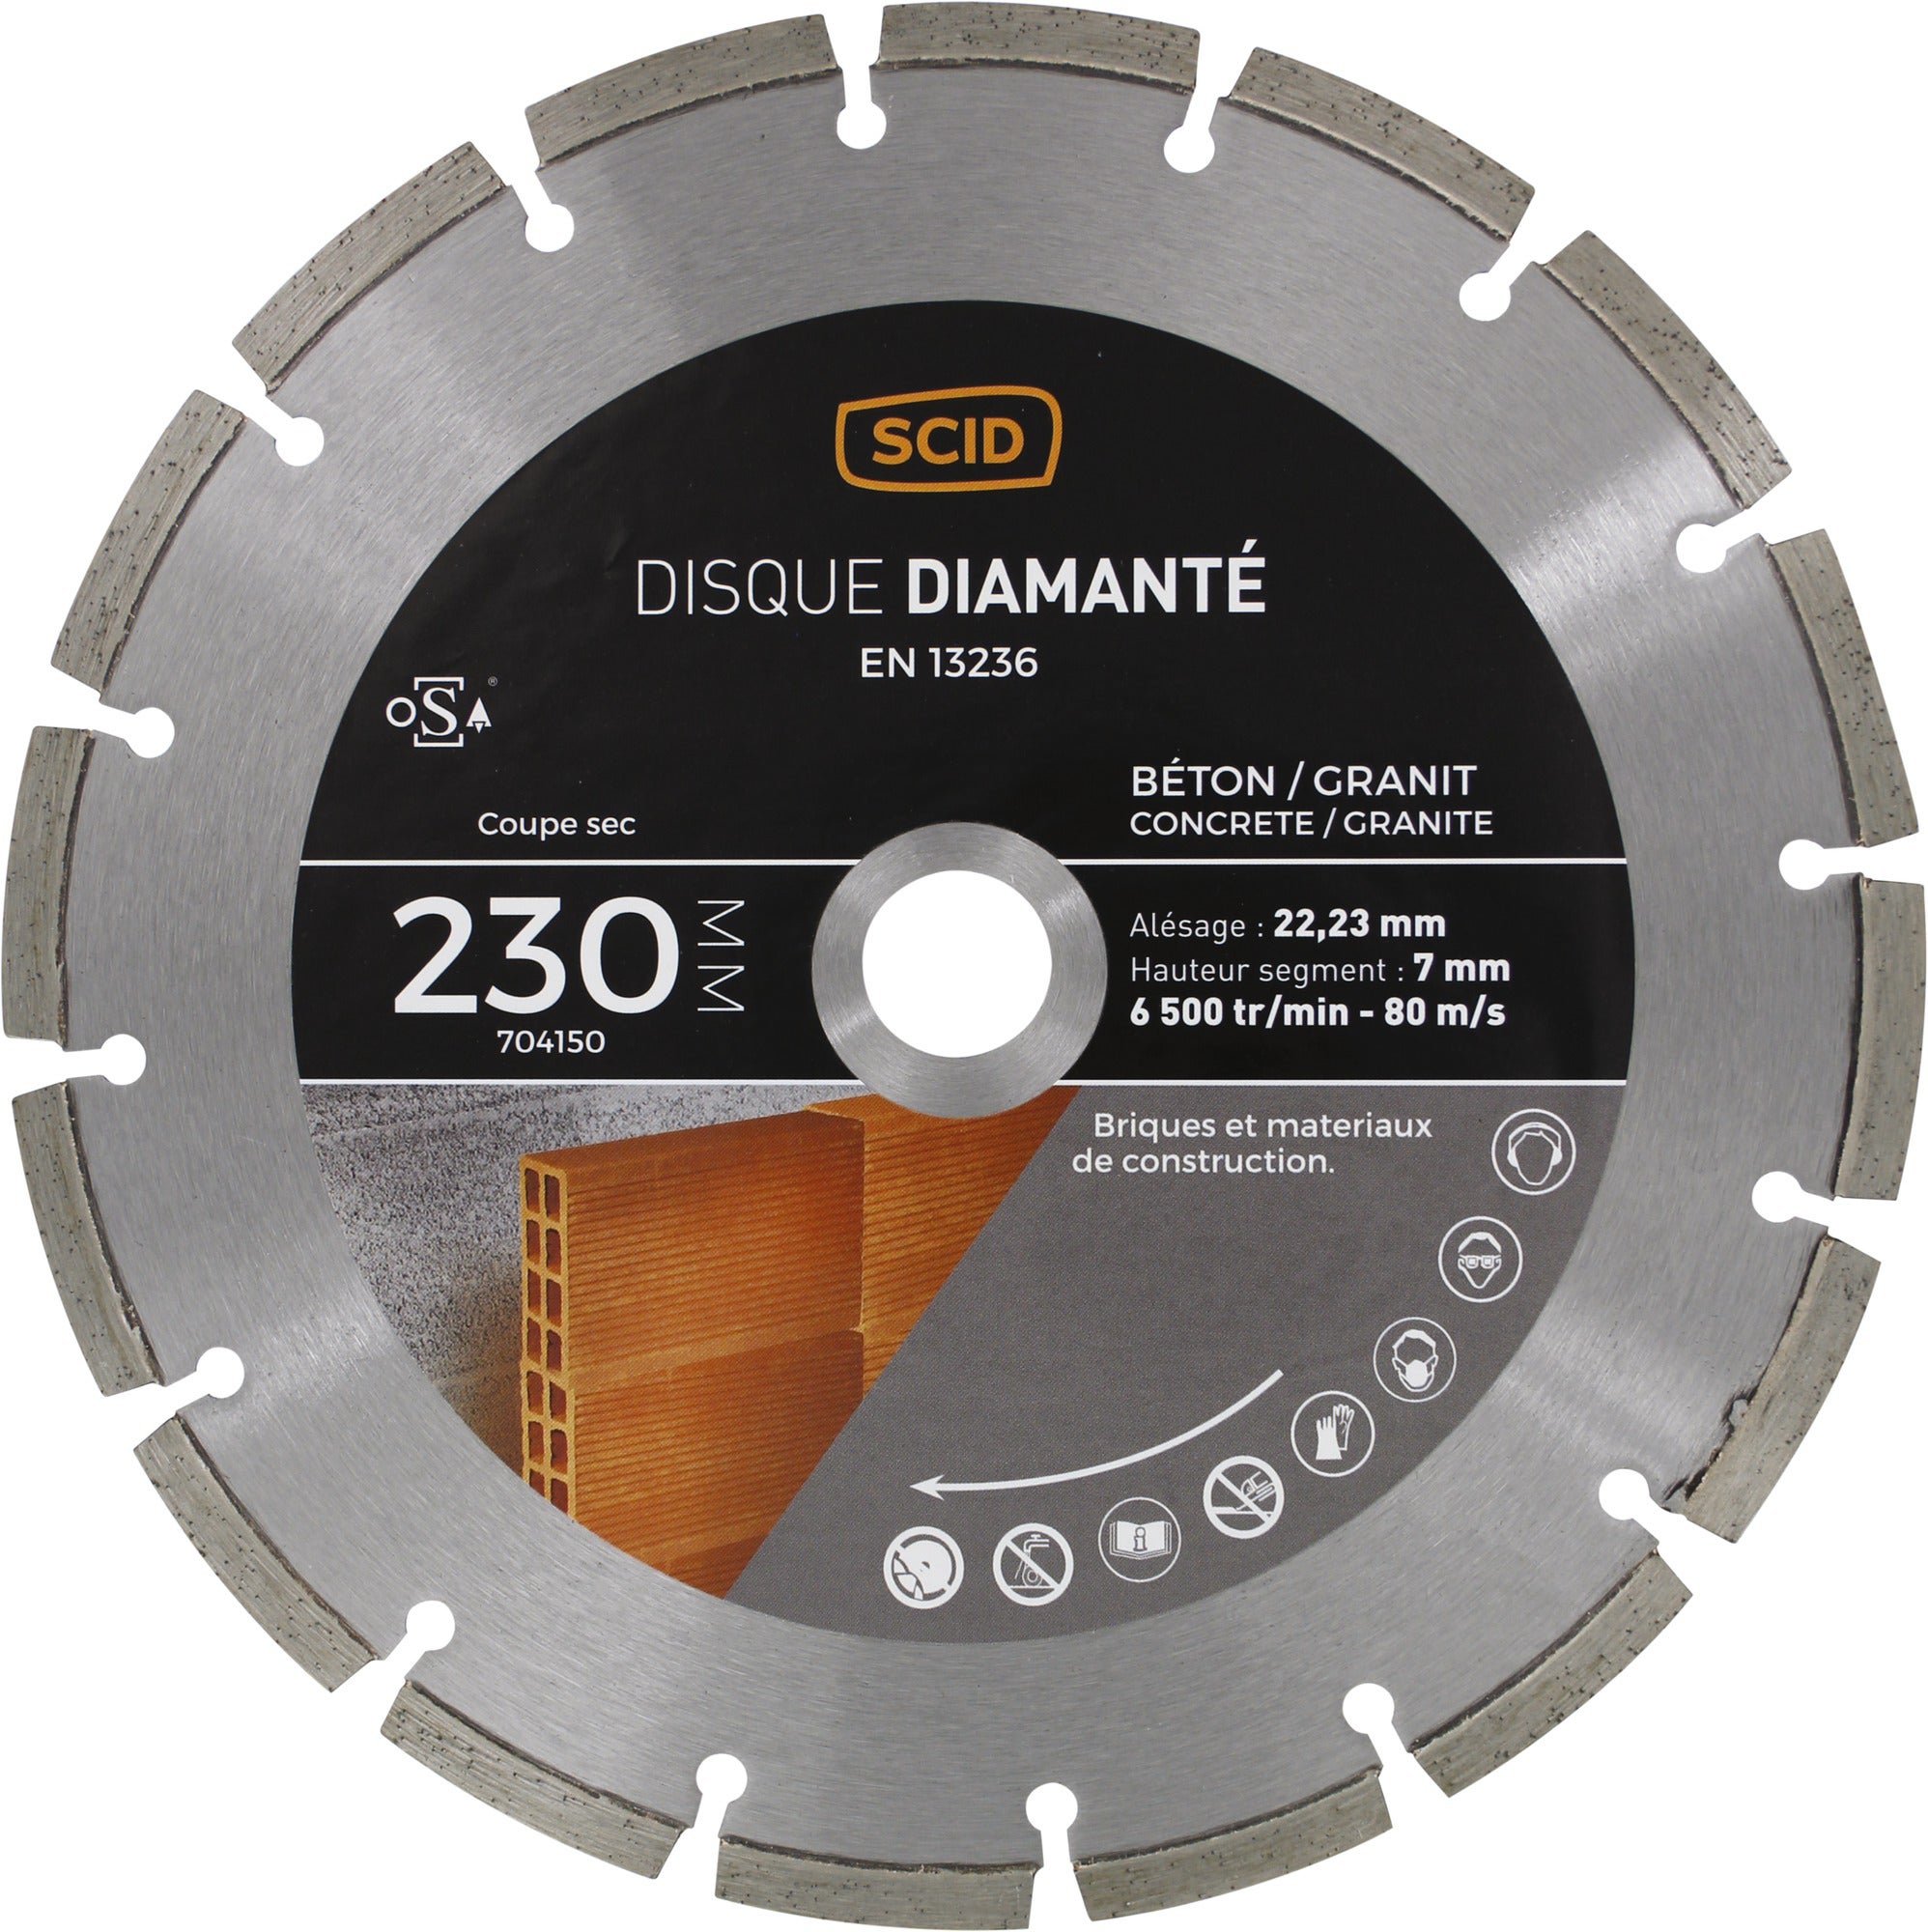 Triumph Disque diamant - 230 mm - Béton Marbre Granite à prix pas cher